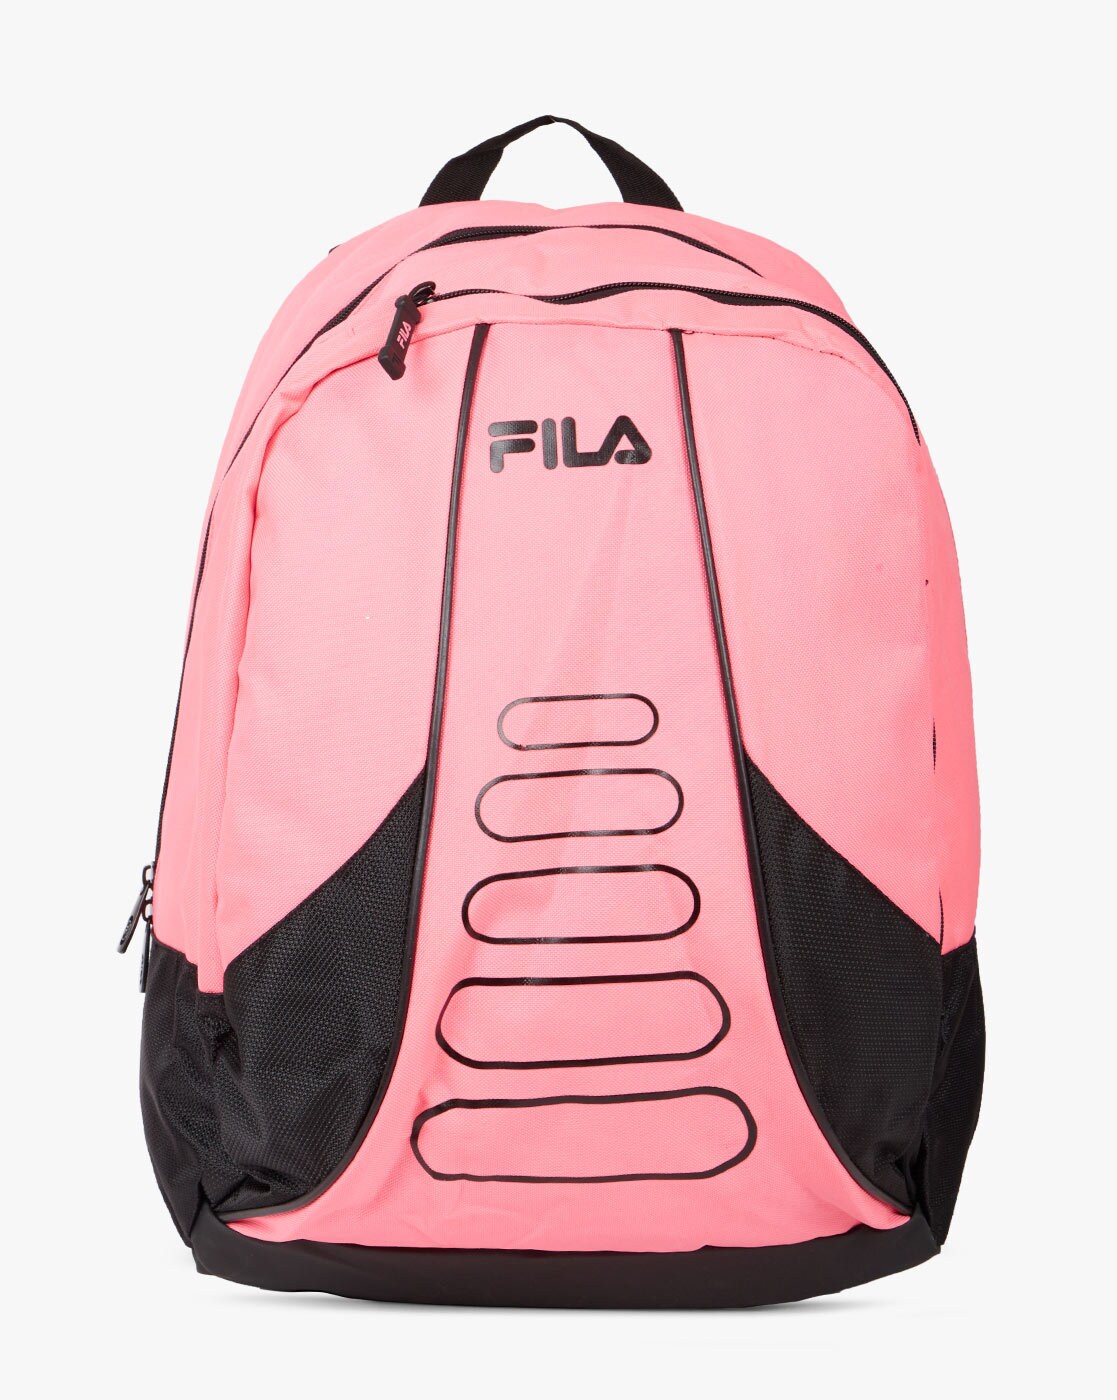 fila bags mens pink